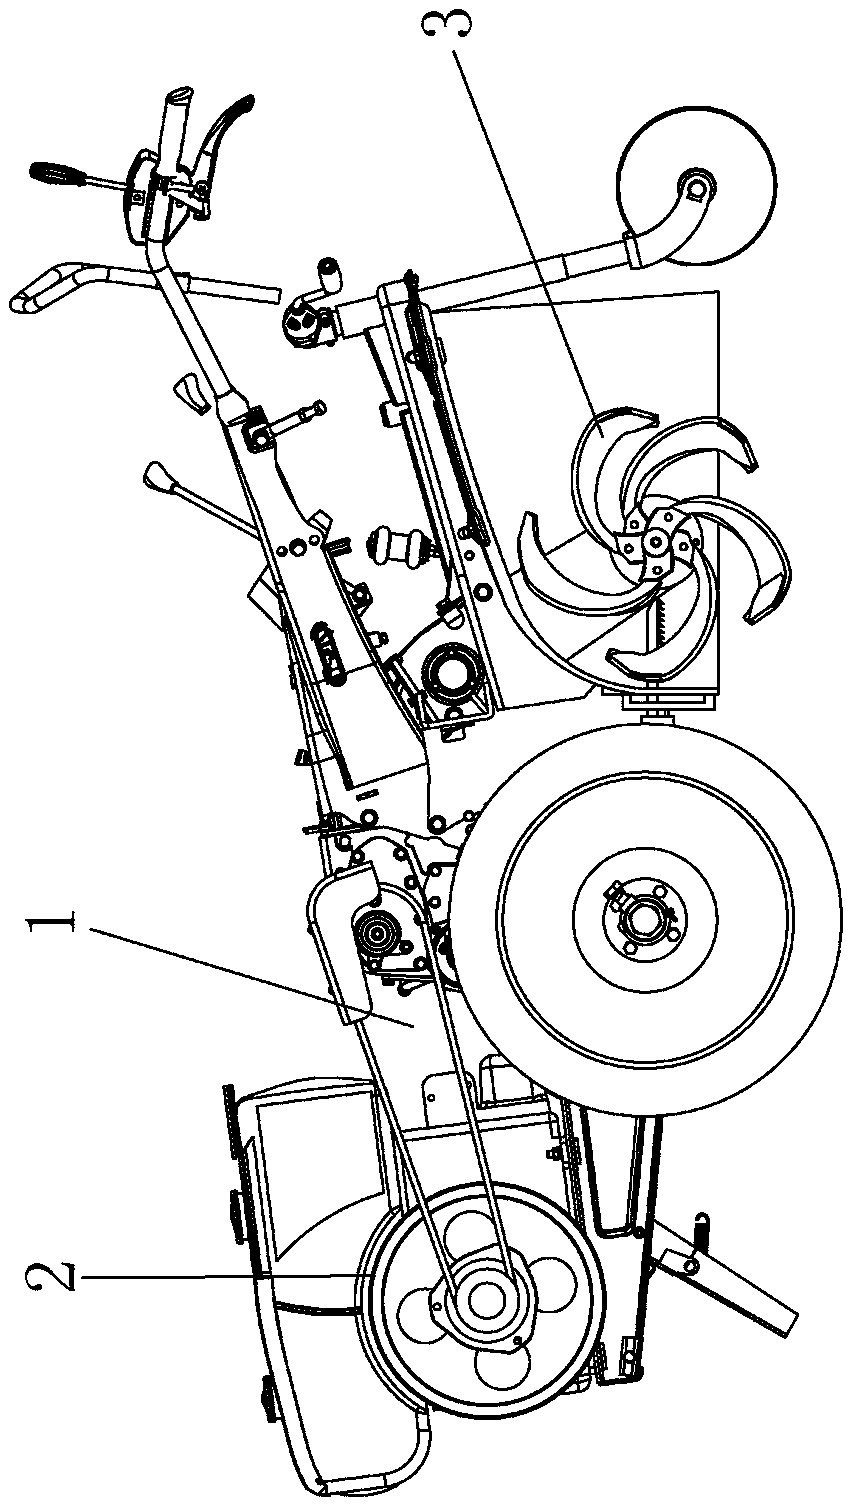 a rotary tiller